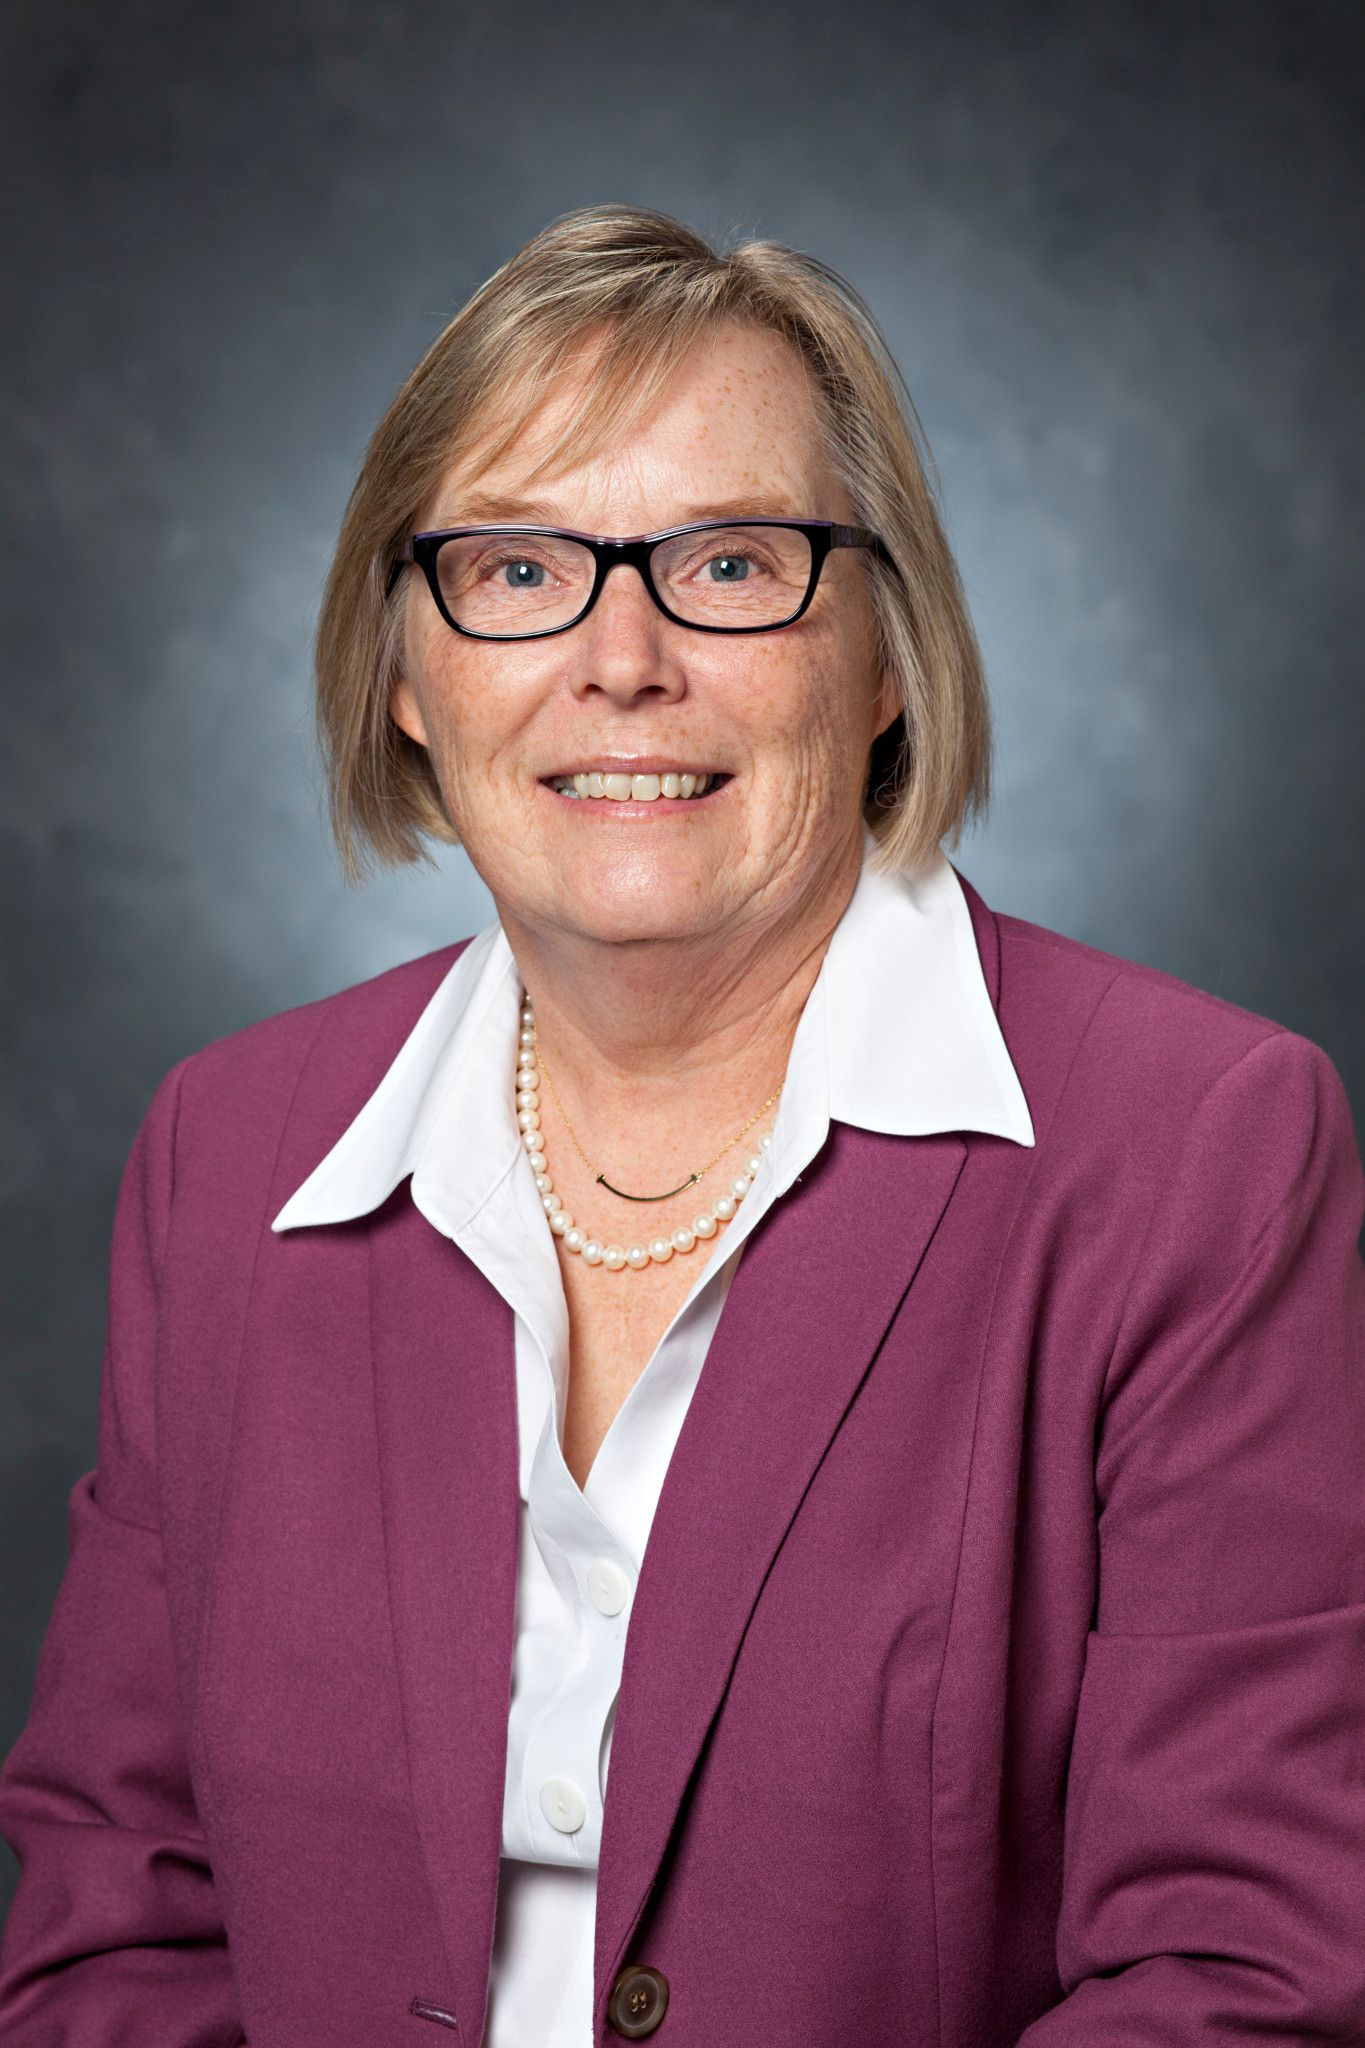 Annette Poulsen, Treasurer